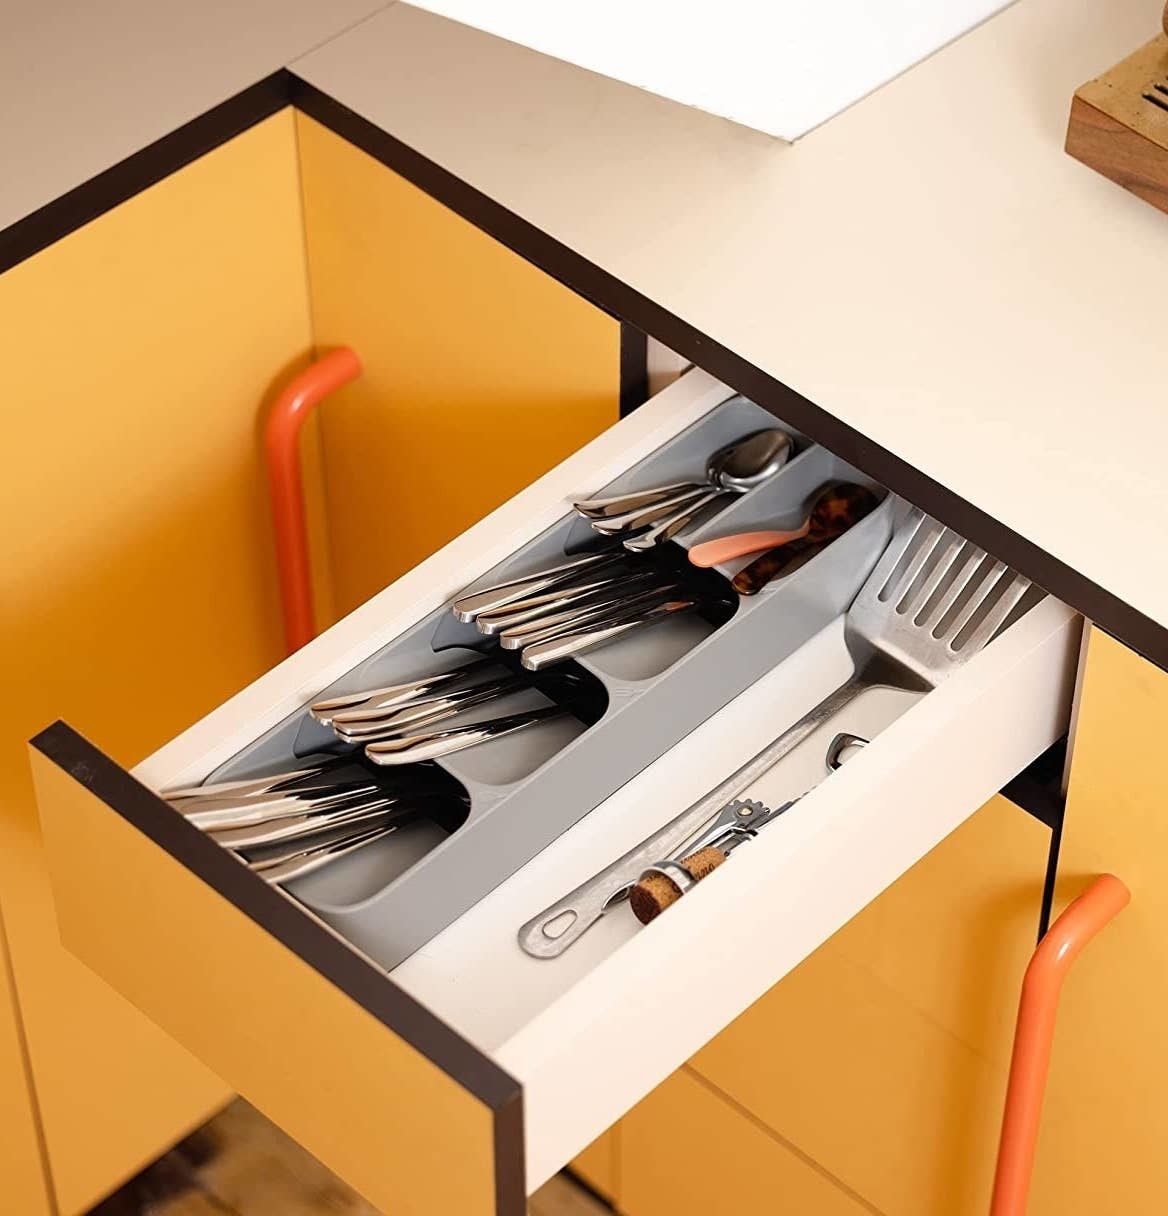 a cutlery organizer in a drawer